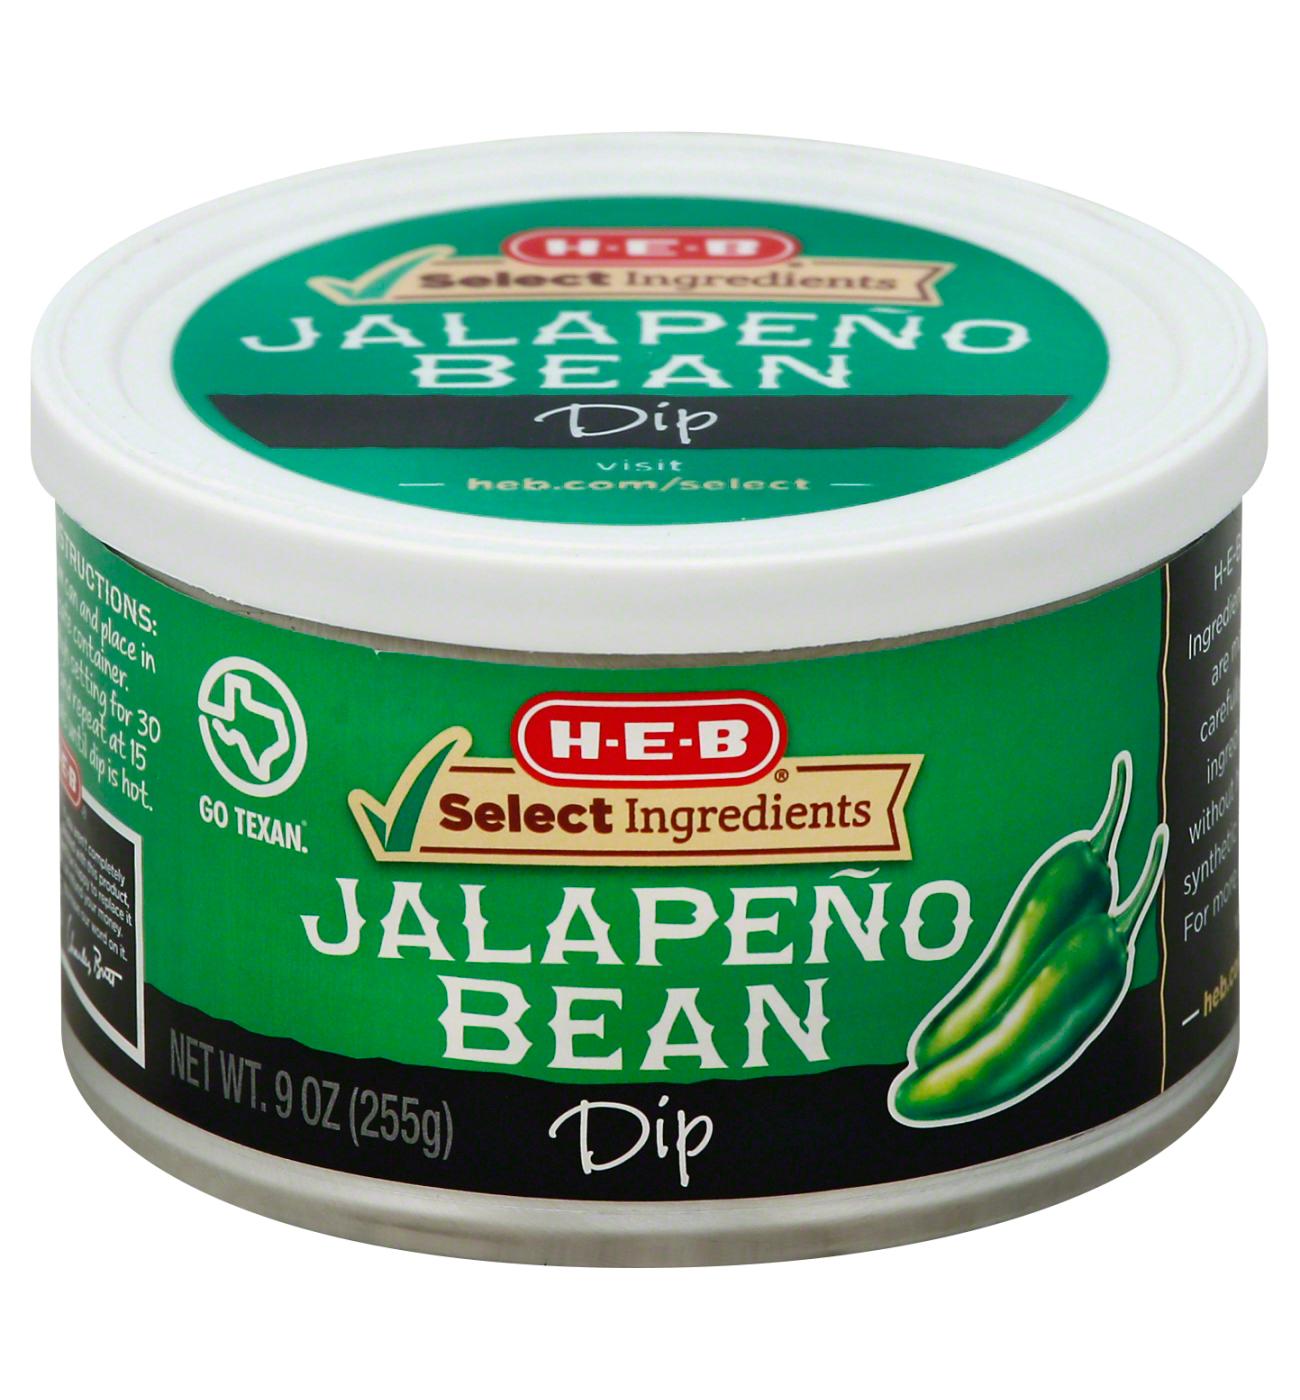 H-E-B Jalapeño Bean Dip; image 1 of 2